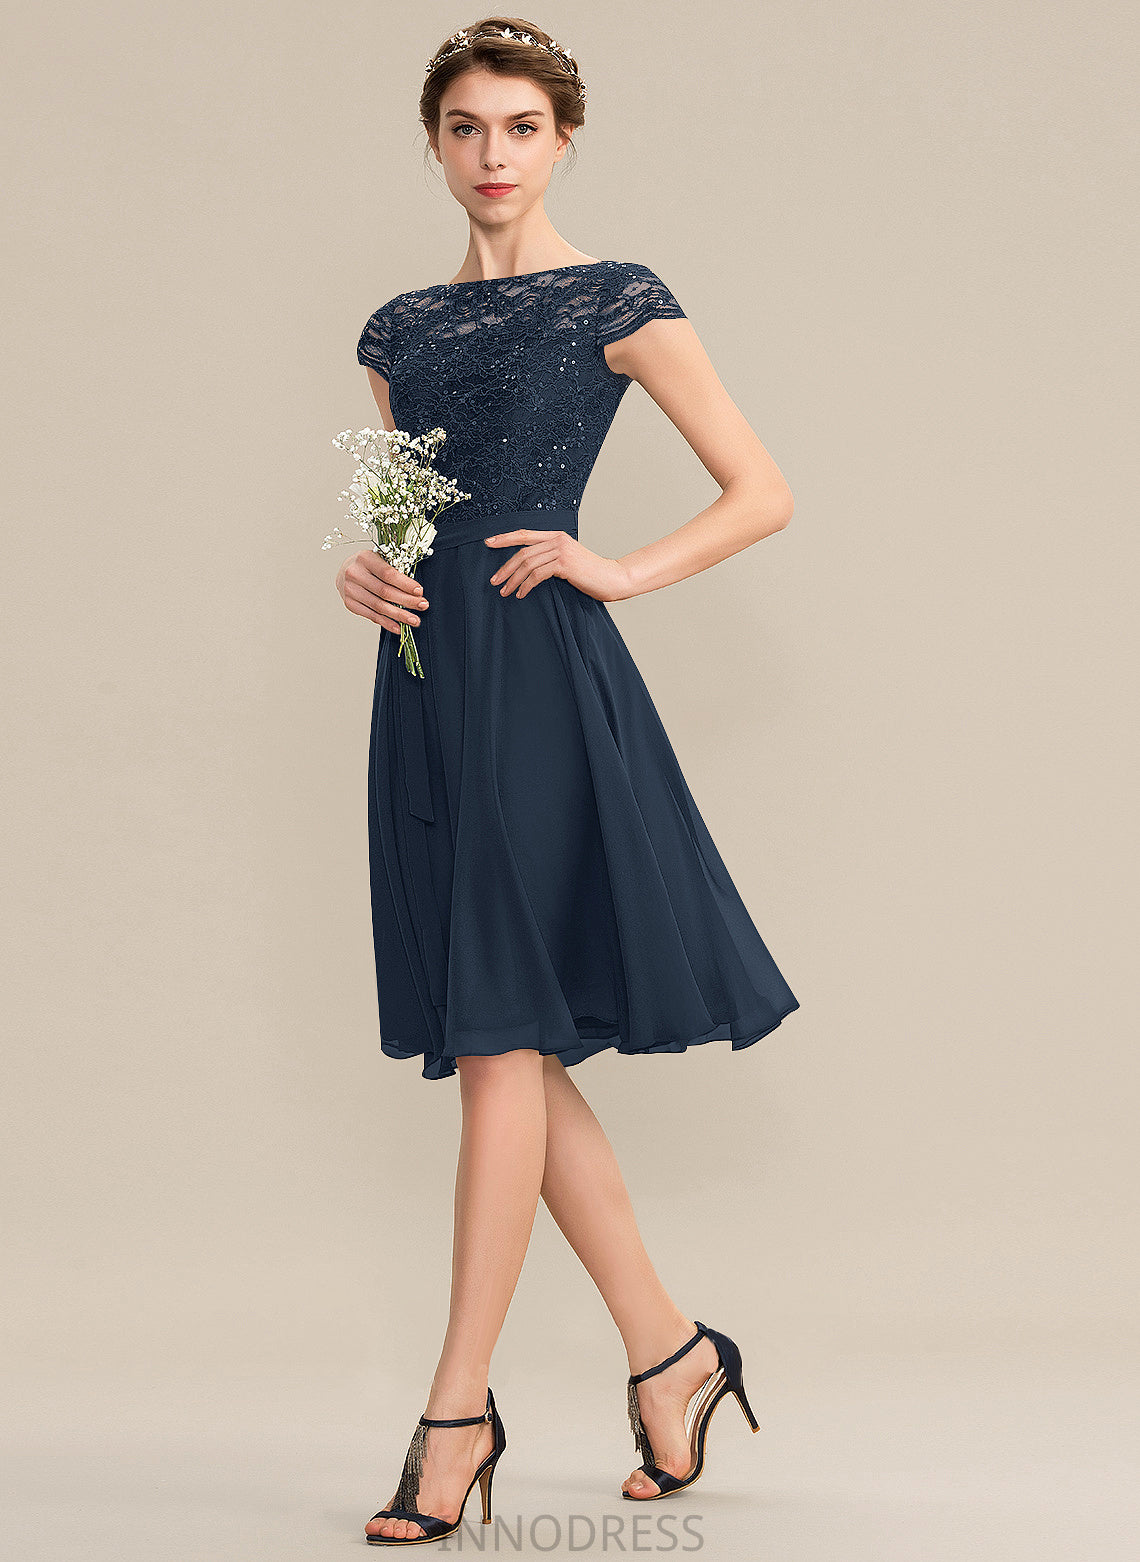 Neckline ScoopNeck Fabric A-Line Length Knee-Length Bow(s) Sequins Embellishment Silhouette Caroline Sleeveless